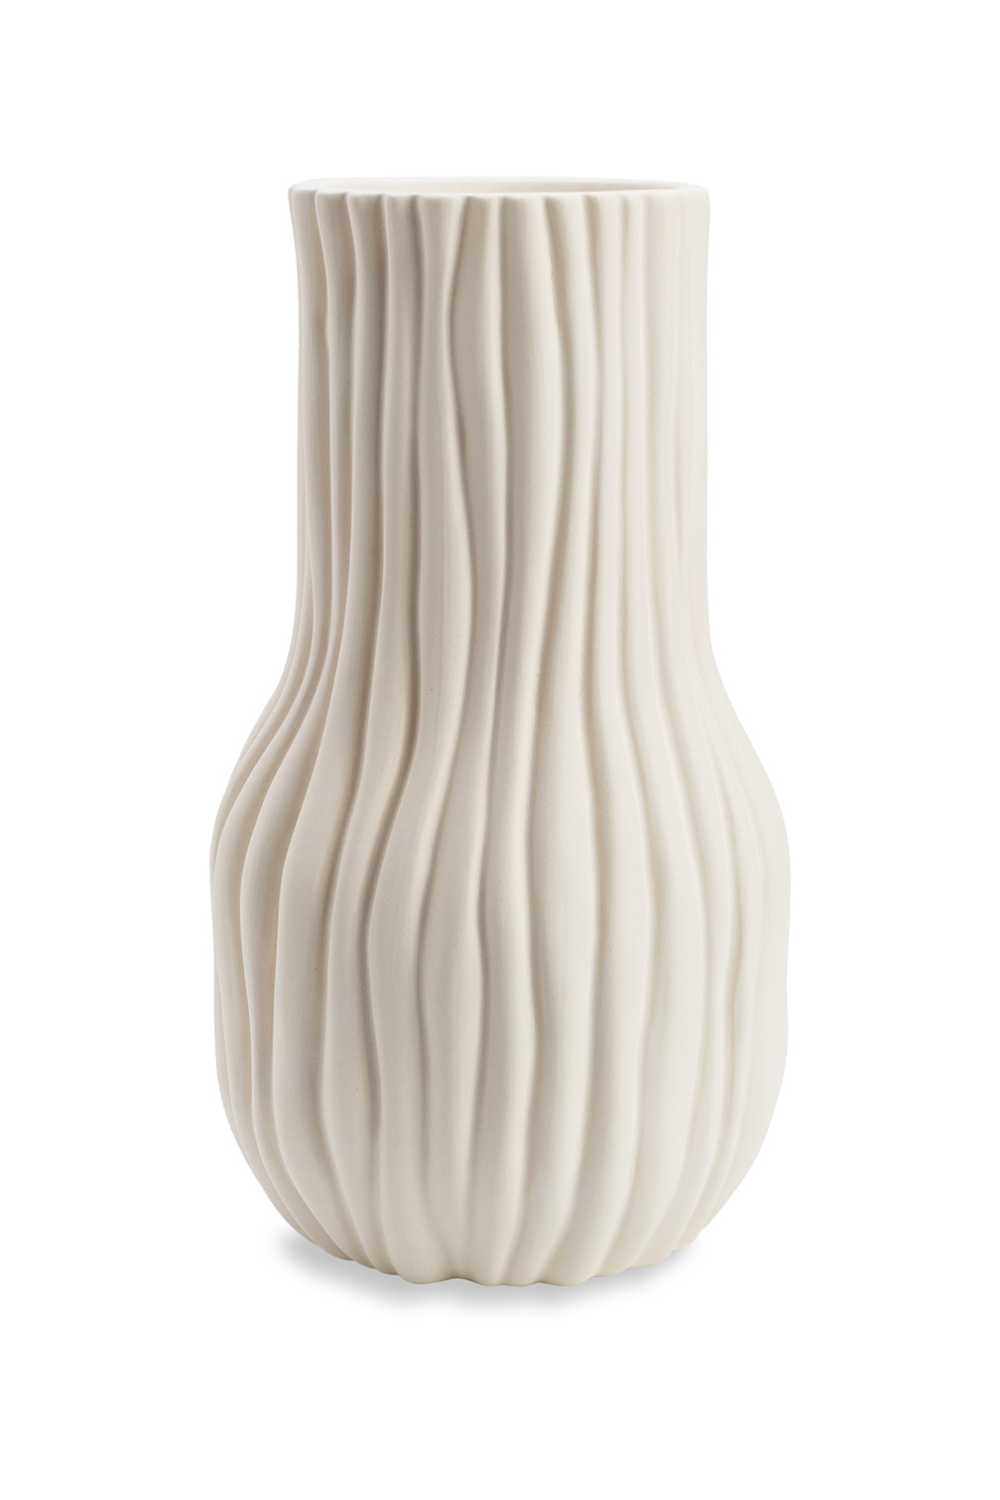 White Hand-Glazed Ceramic Vase | Liang & Eimil Barc | OROA.com